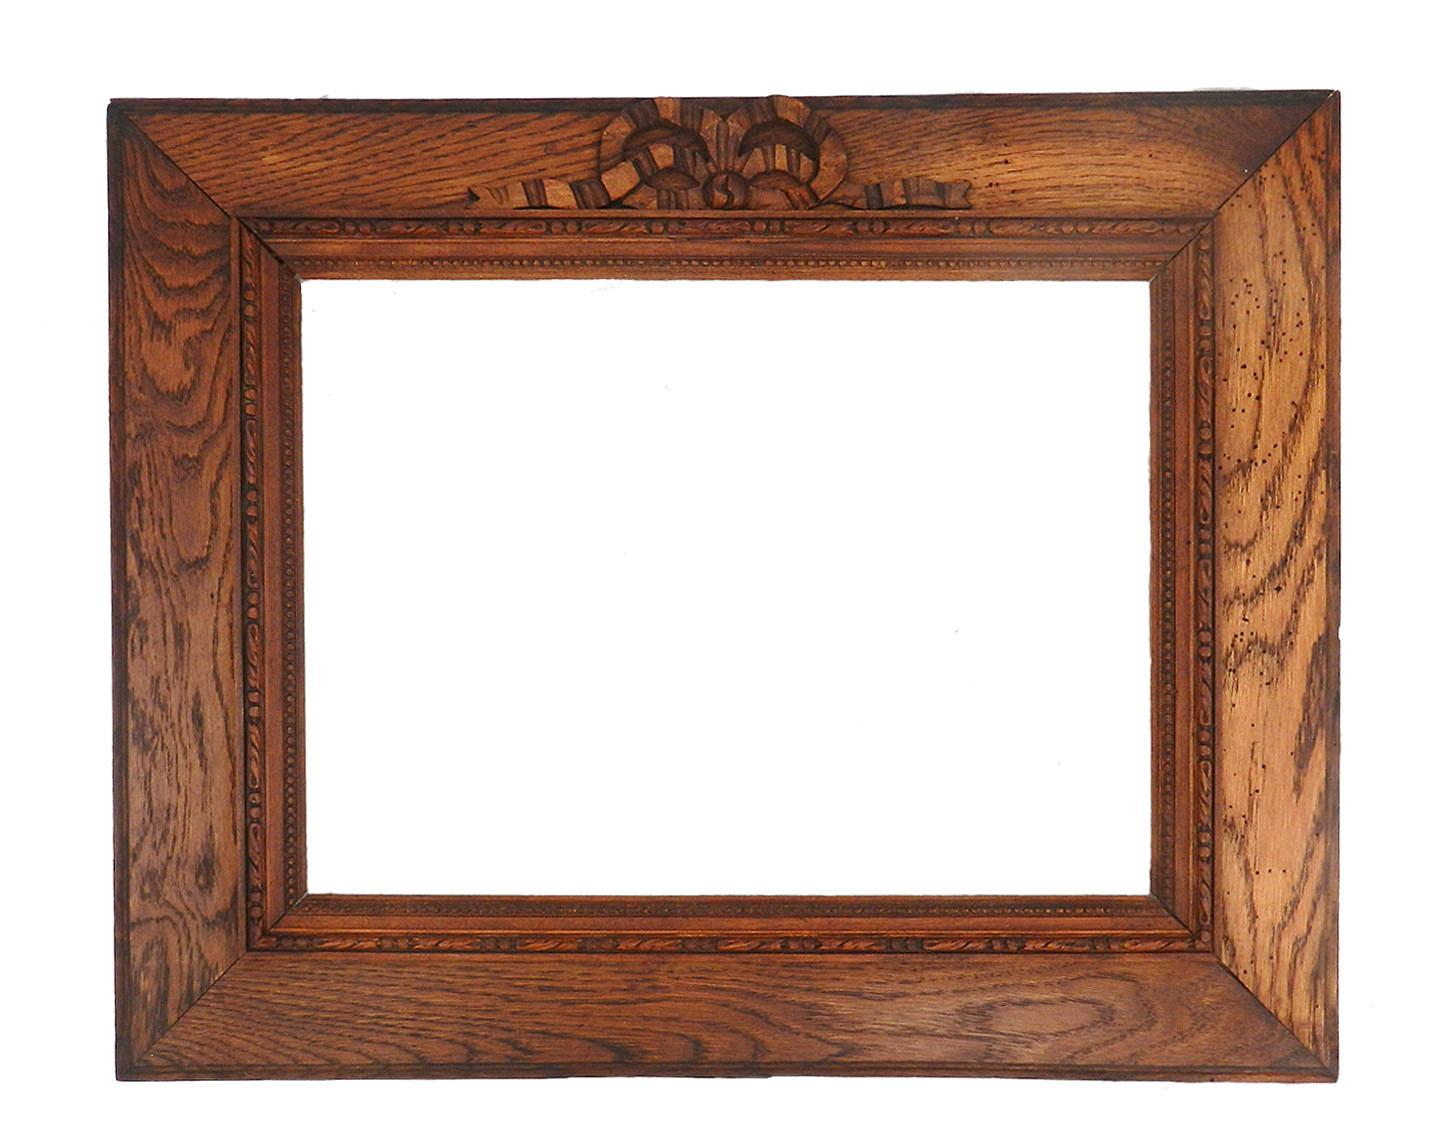 Zwei Spiegel oder Bilderrahmen French Provincial 19. Jahrhundert Louis XVI revival einzeln bewertet, um 1880
1) Der Rahmen 